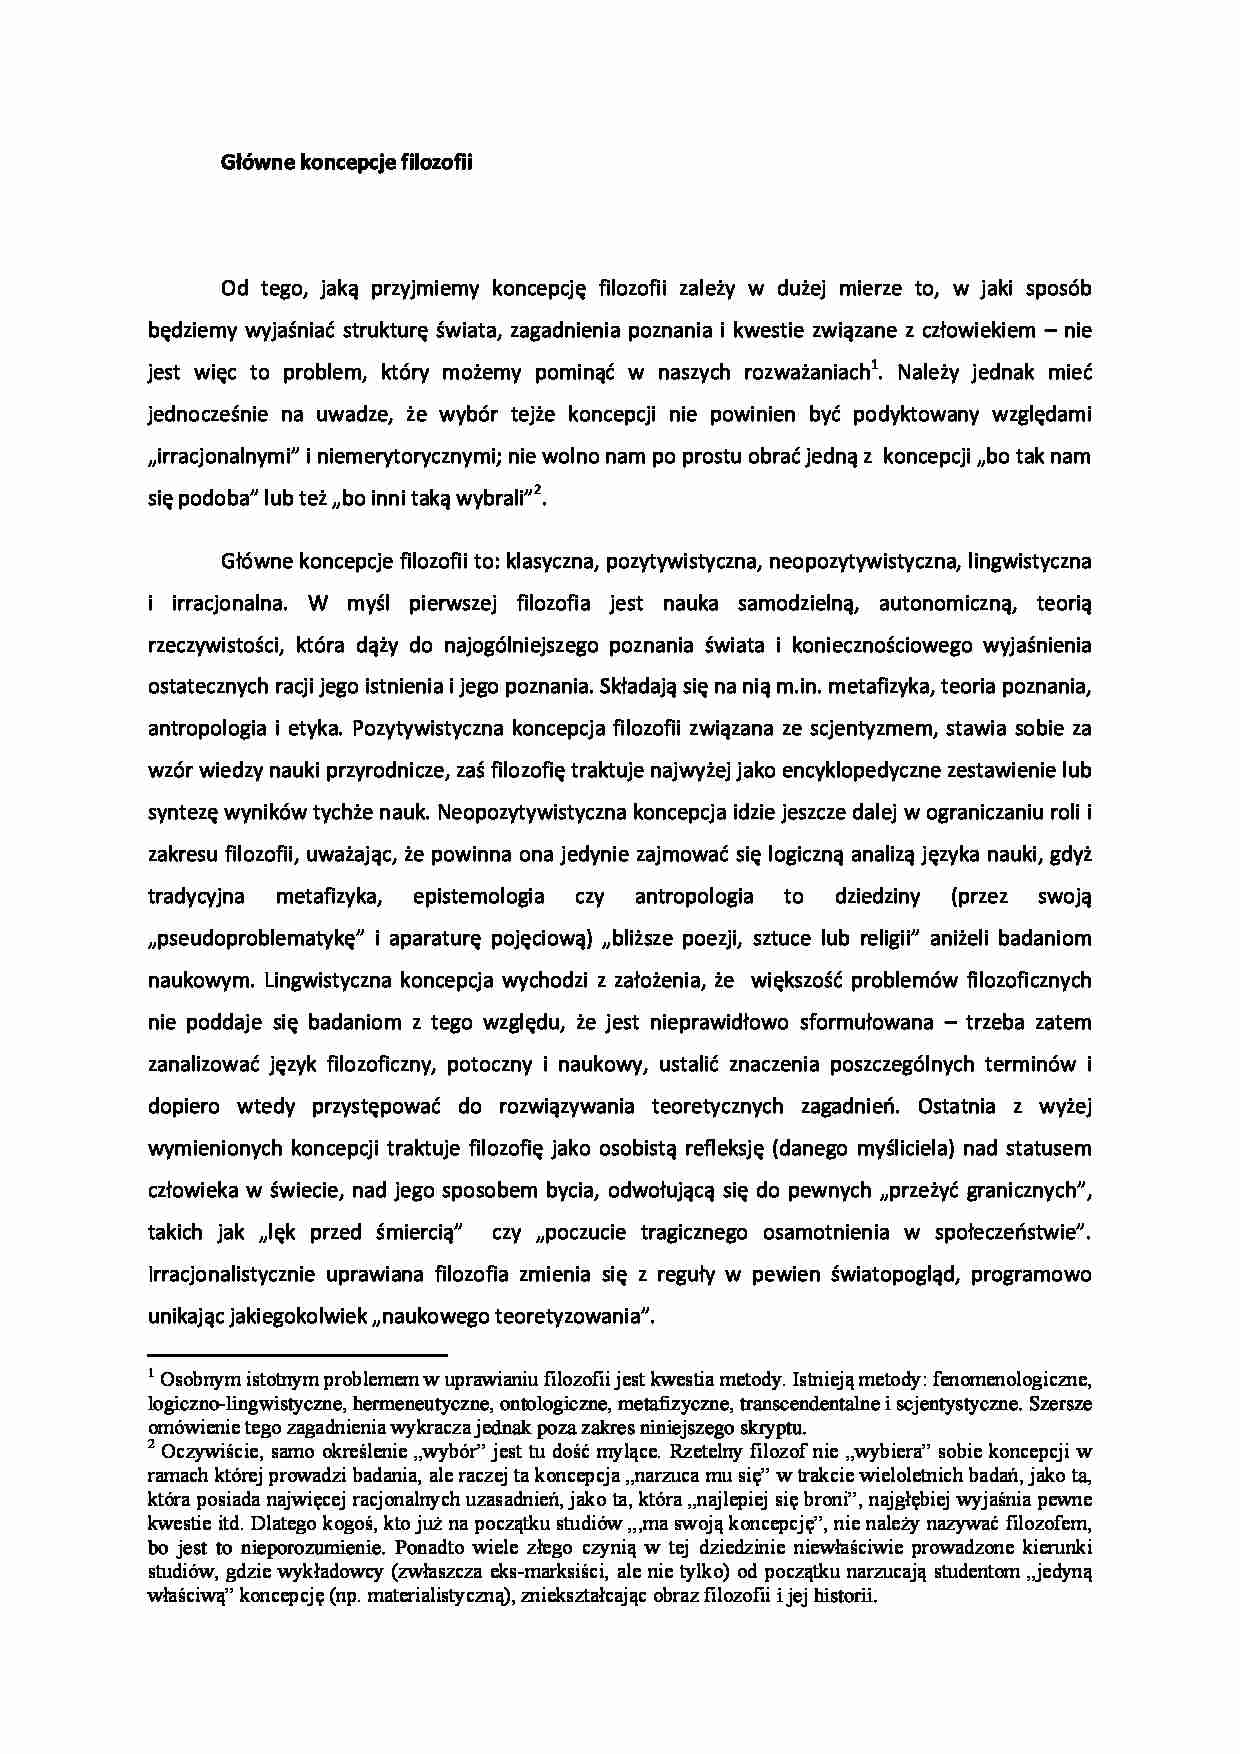 Główne koncepcje filozofii - strona 1